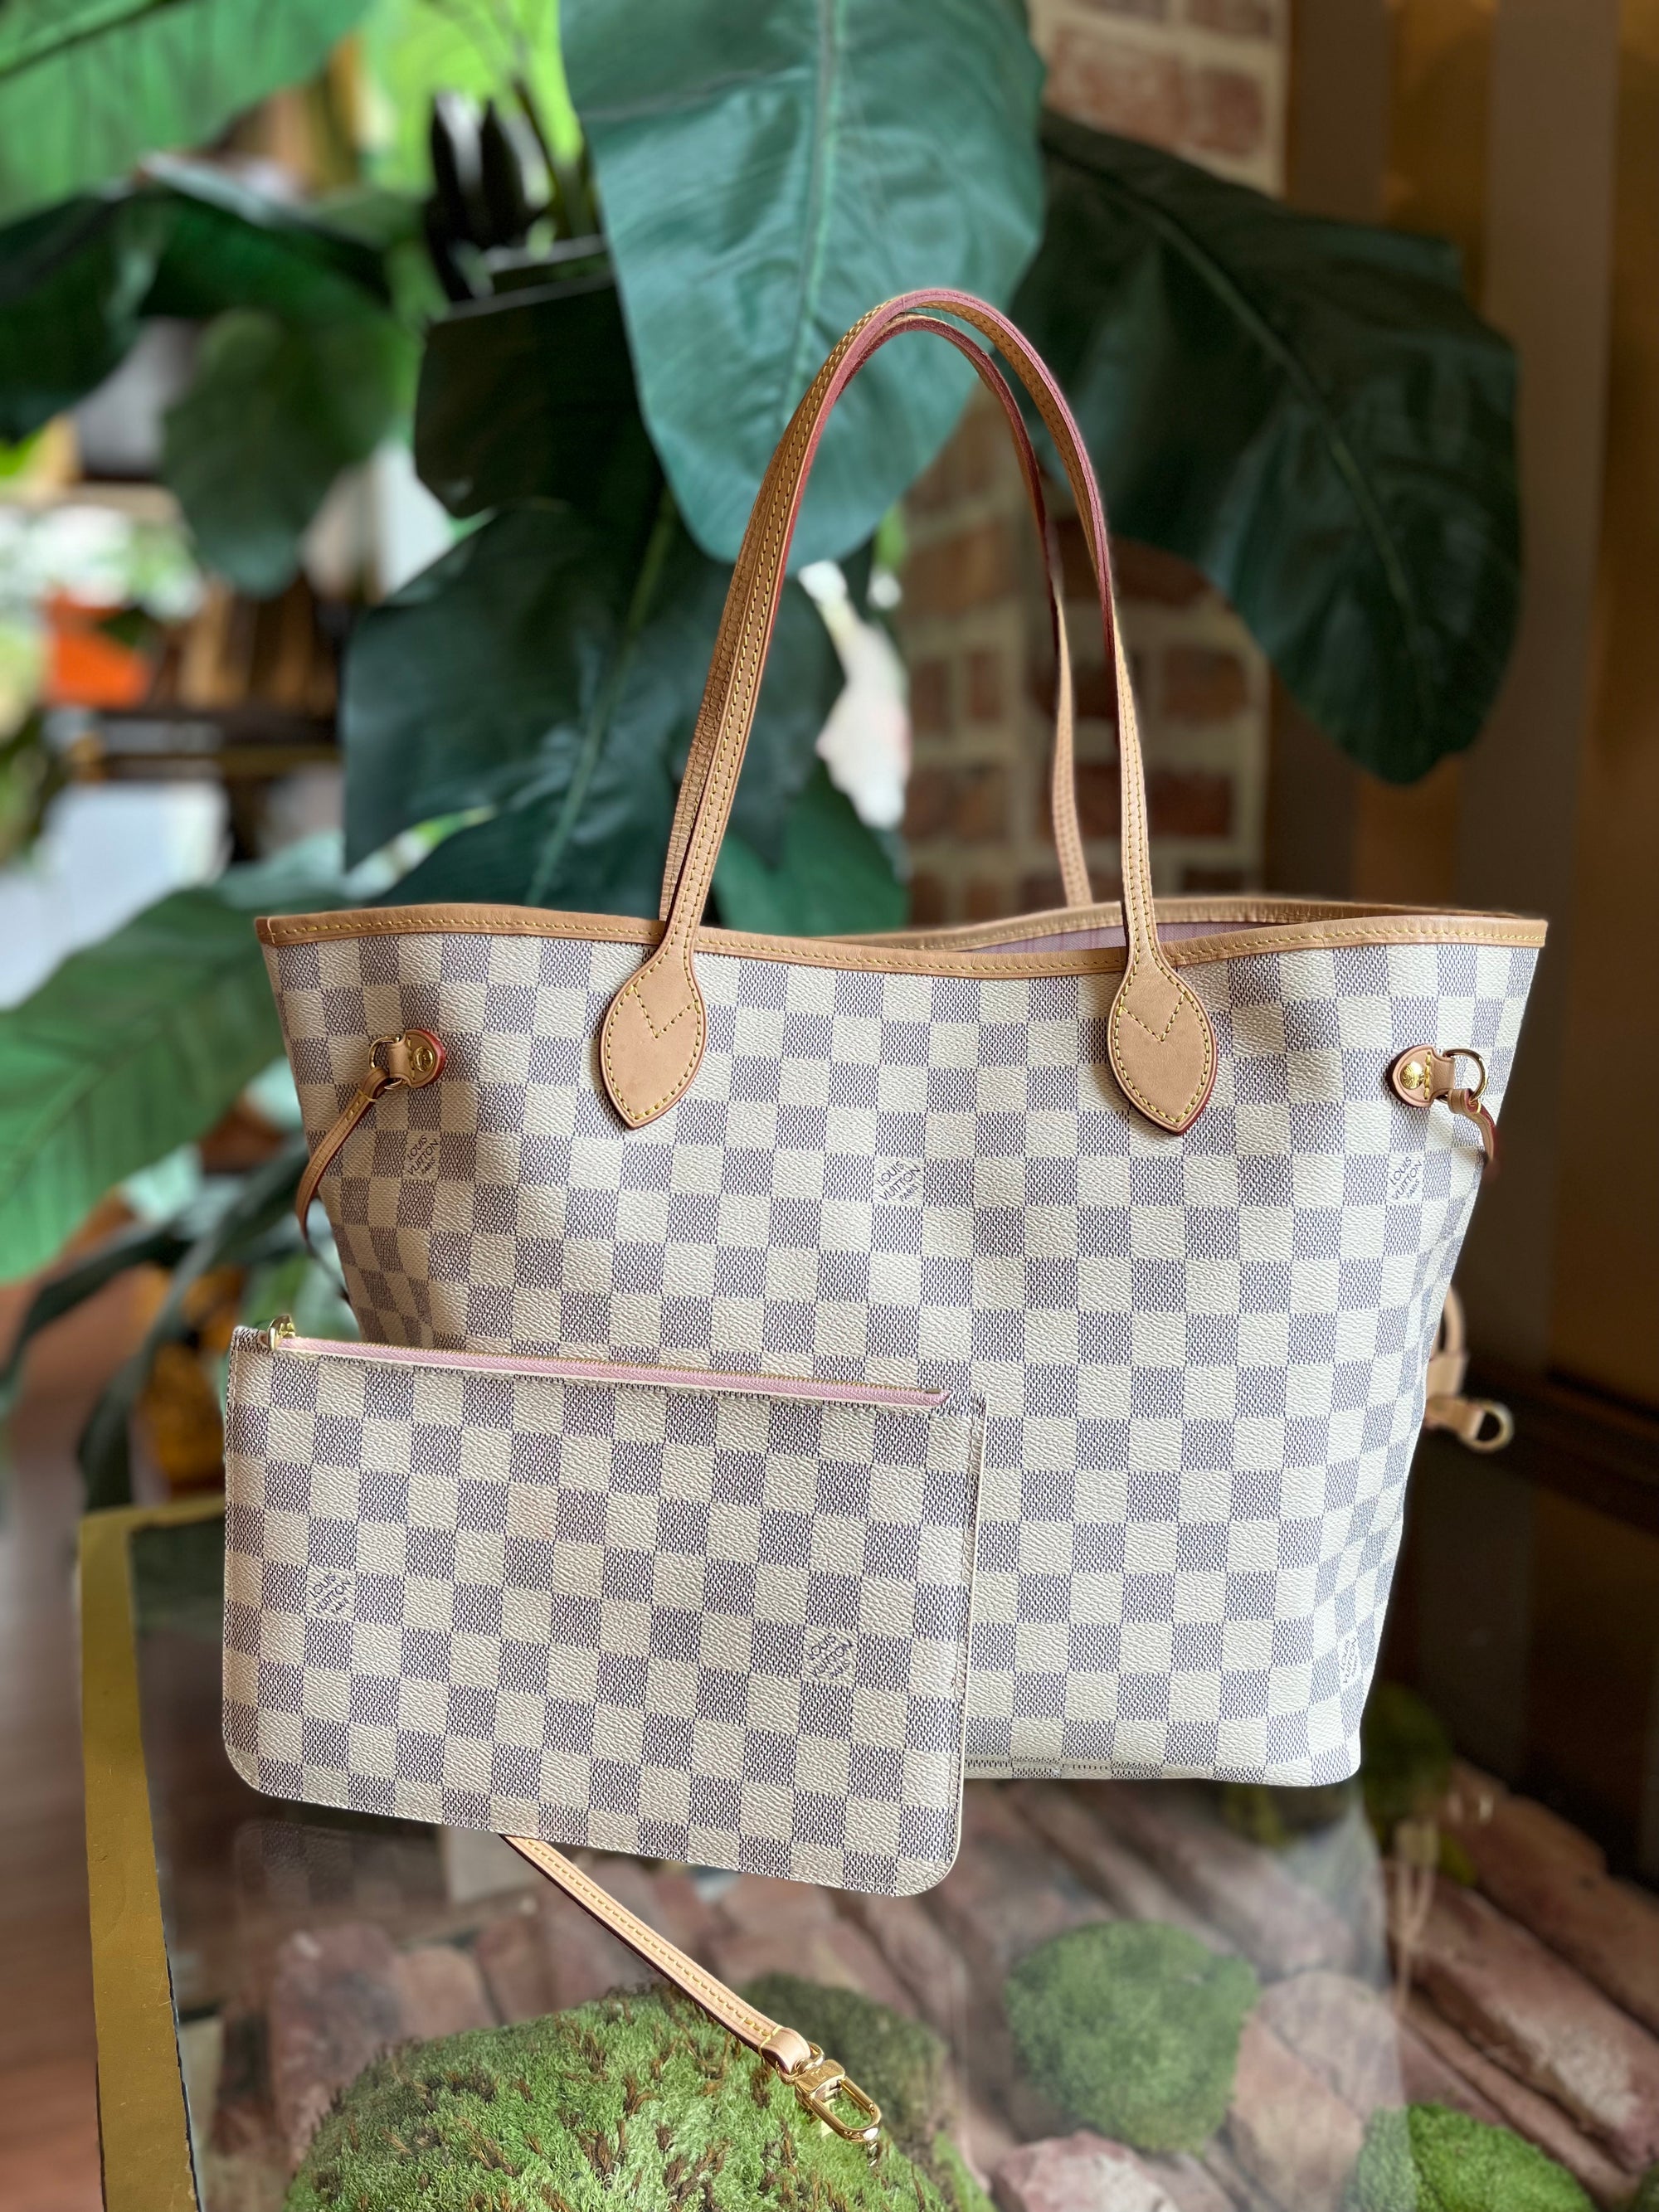 authentic louis vuitton handbags for sale